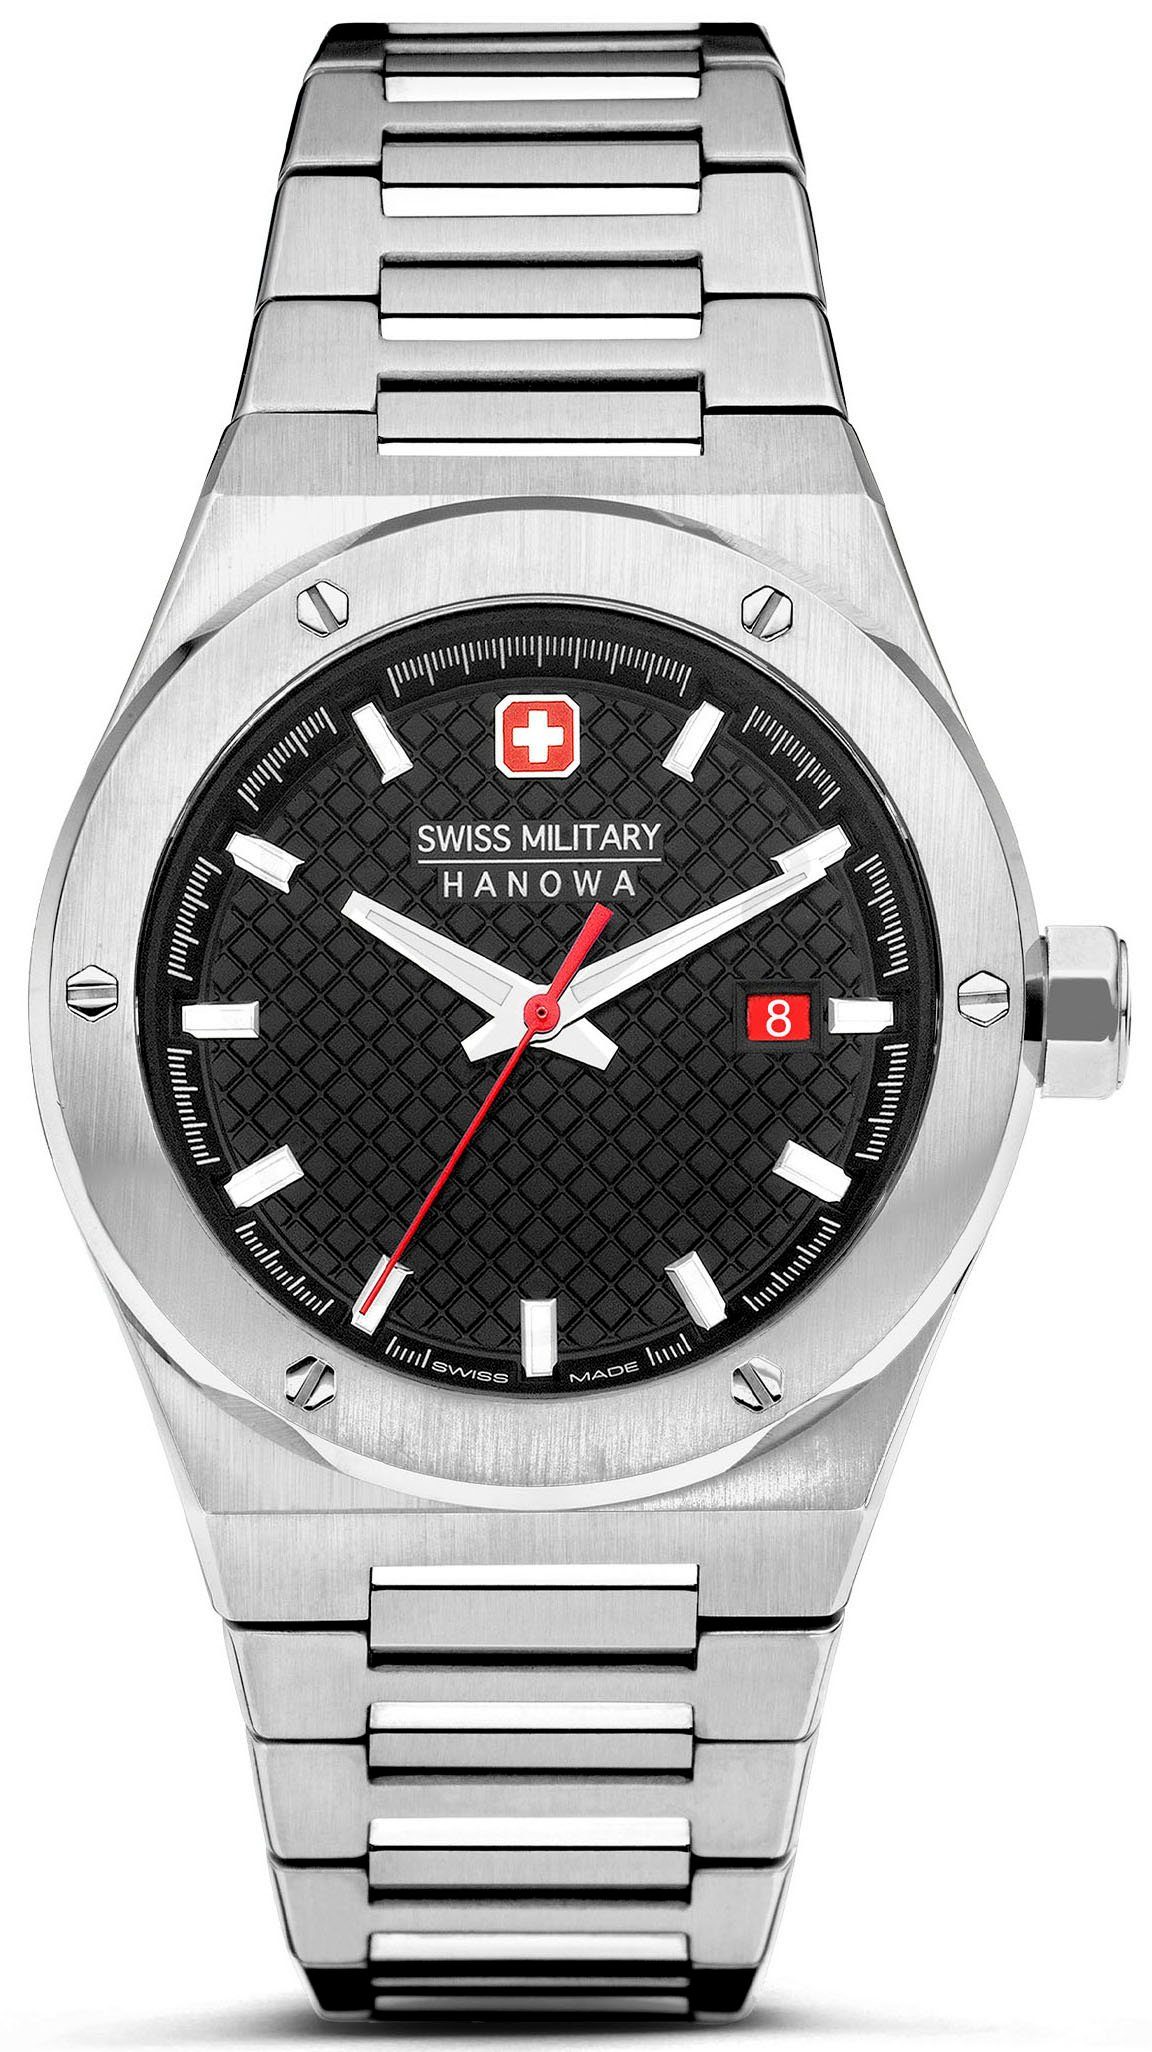 Swiss Military Hanowa Quarzuhr SIDEWINDER, SMWGH2101604, Armbanduhr, Herrenuhr, Schweizer Uhr, Swiss Made, Datum, Saphirglas